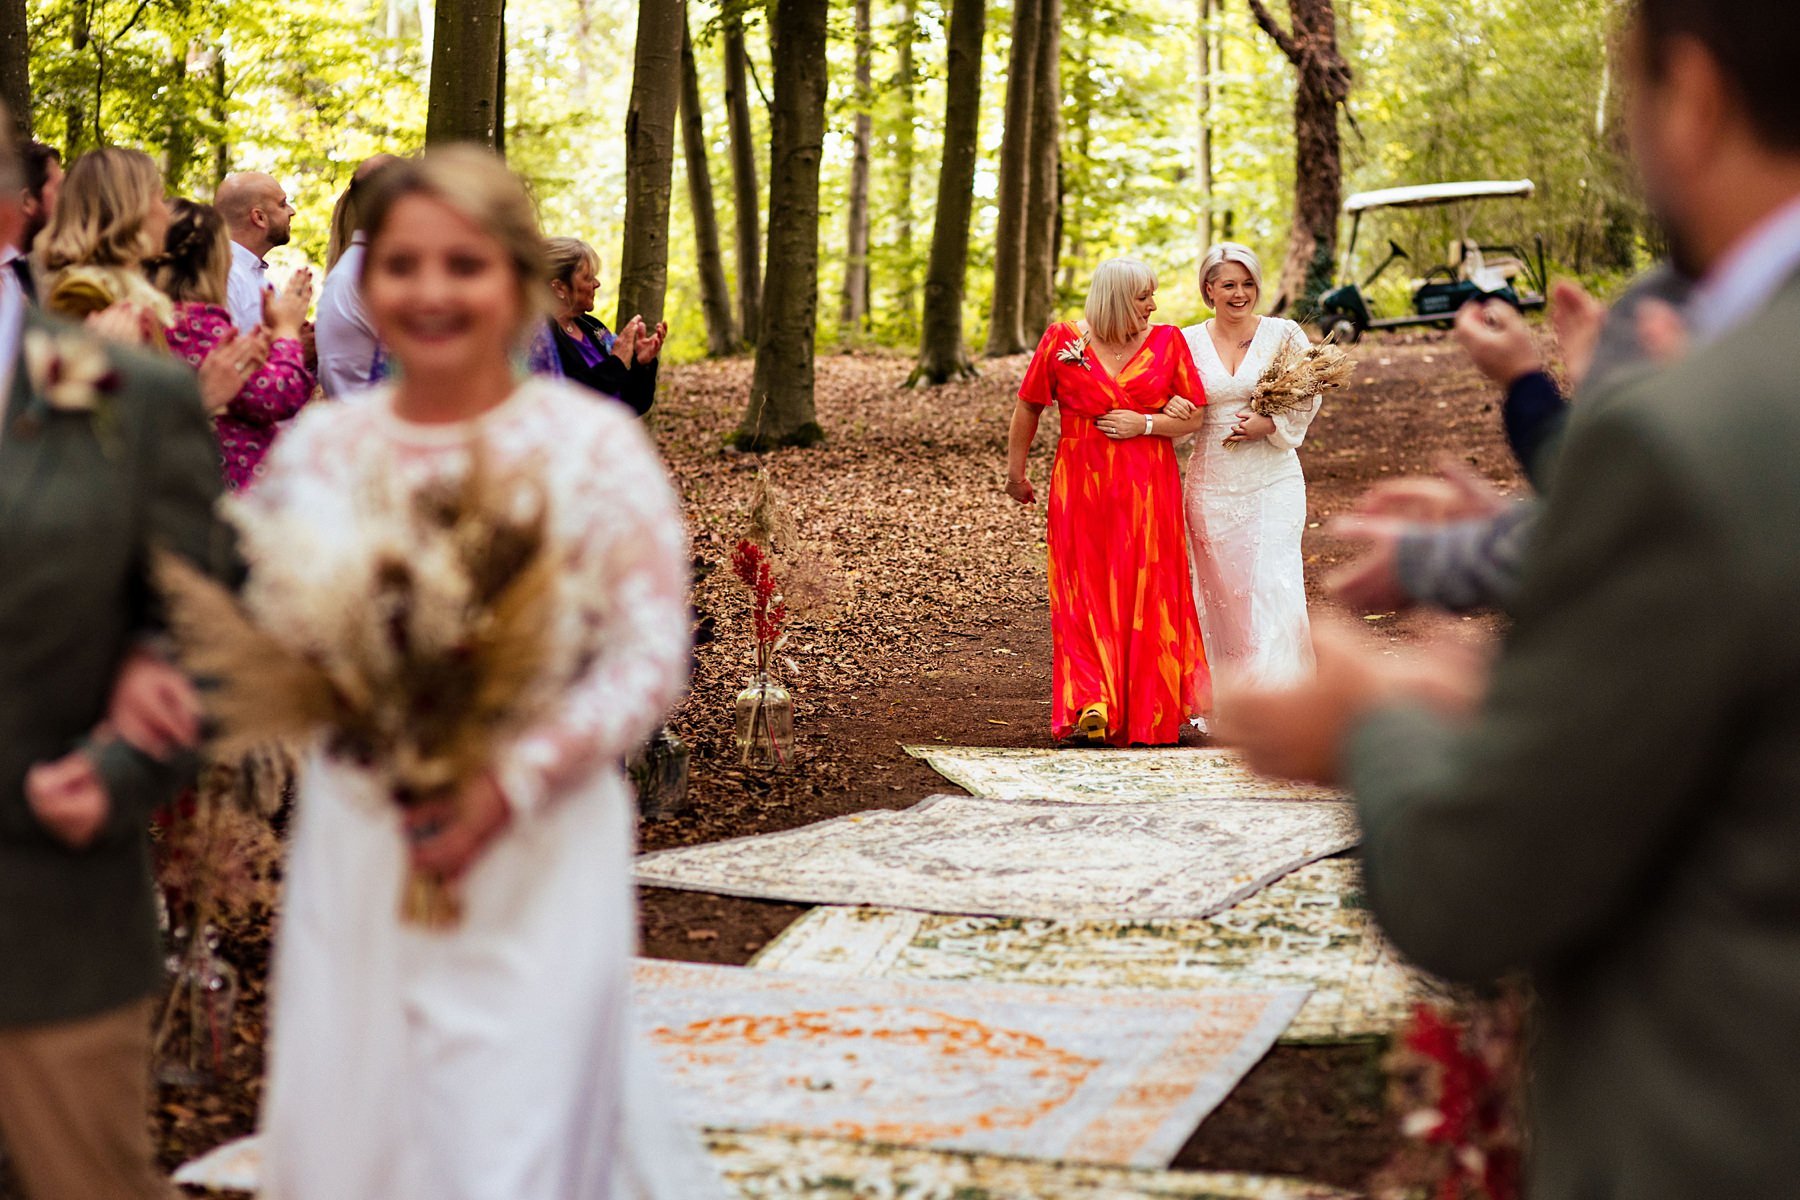 evenley-wood-garden-wedding-in-the-woods_0022.jpg